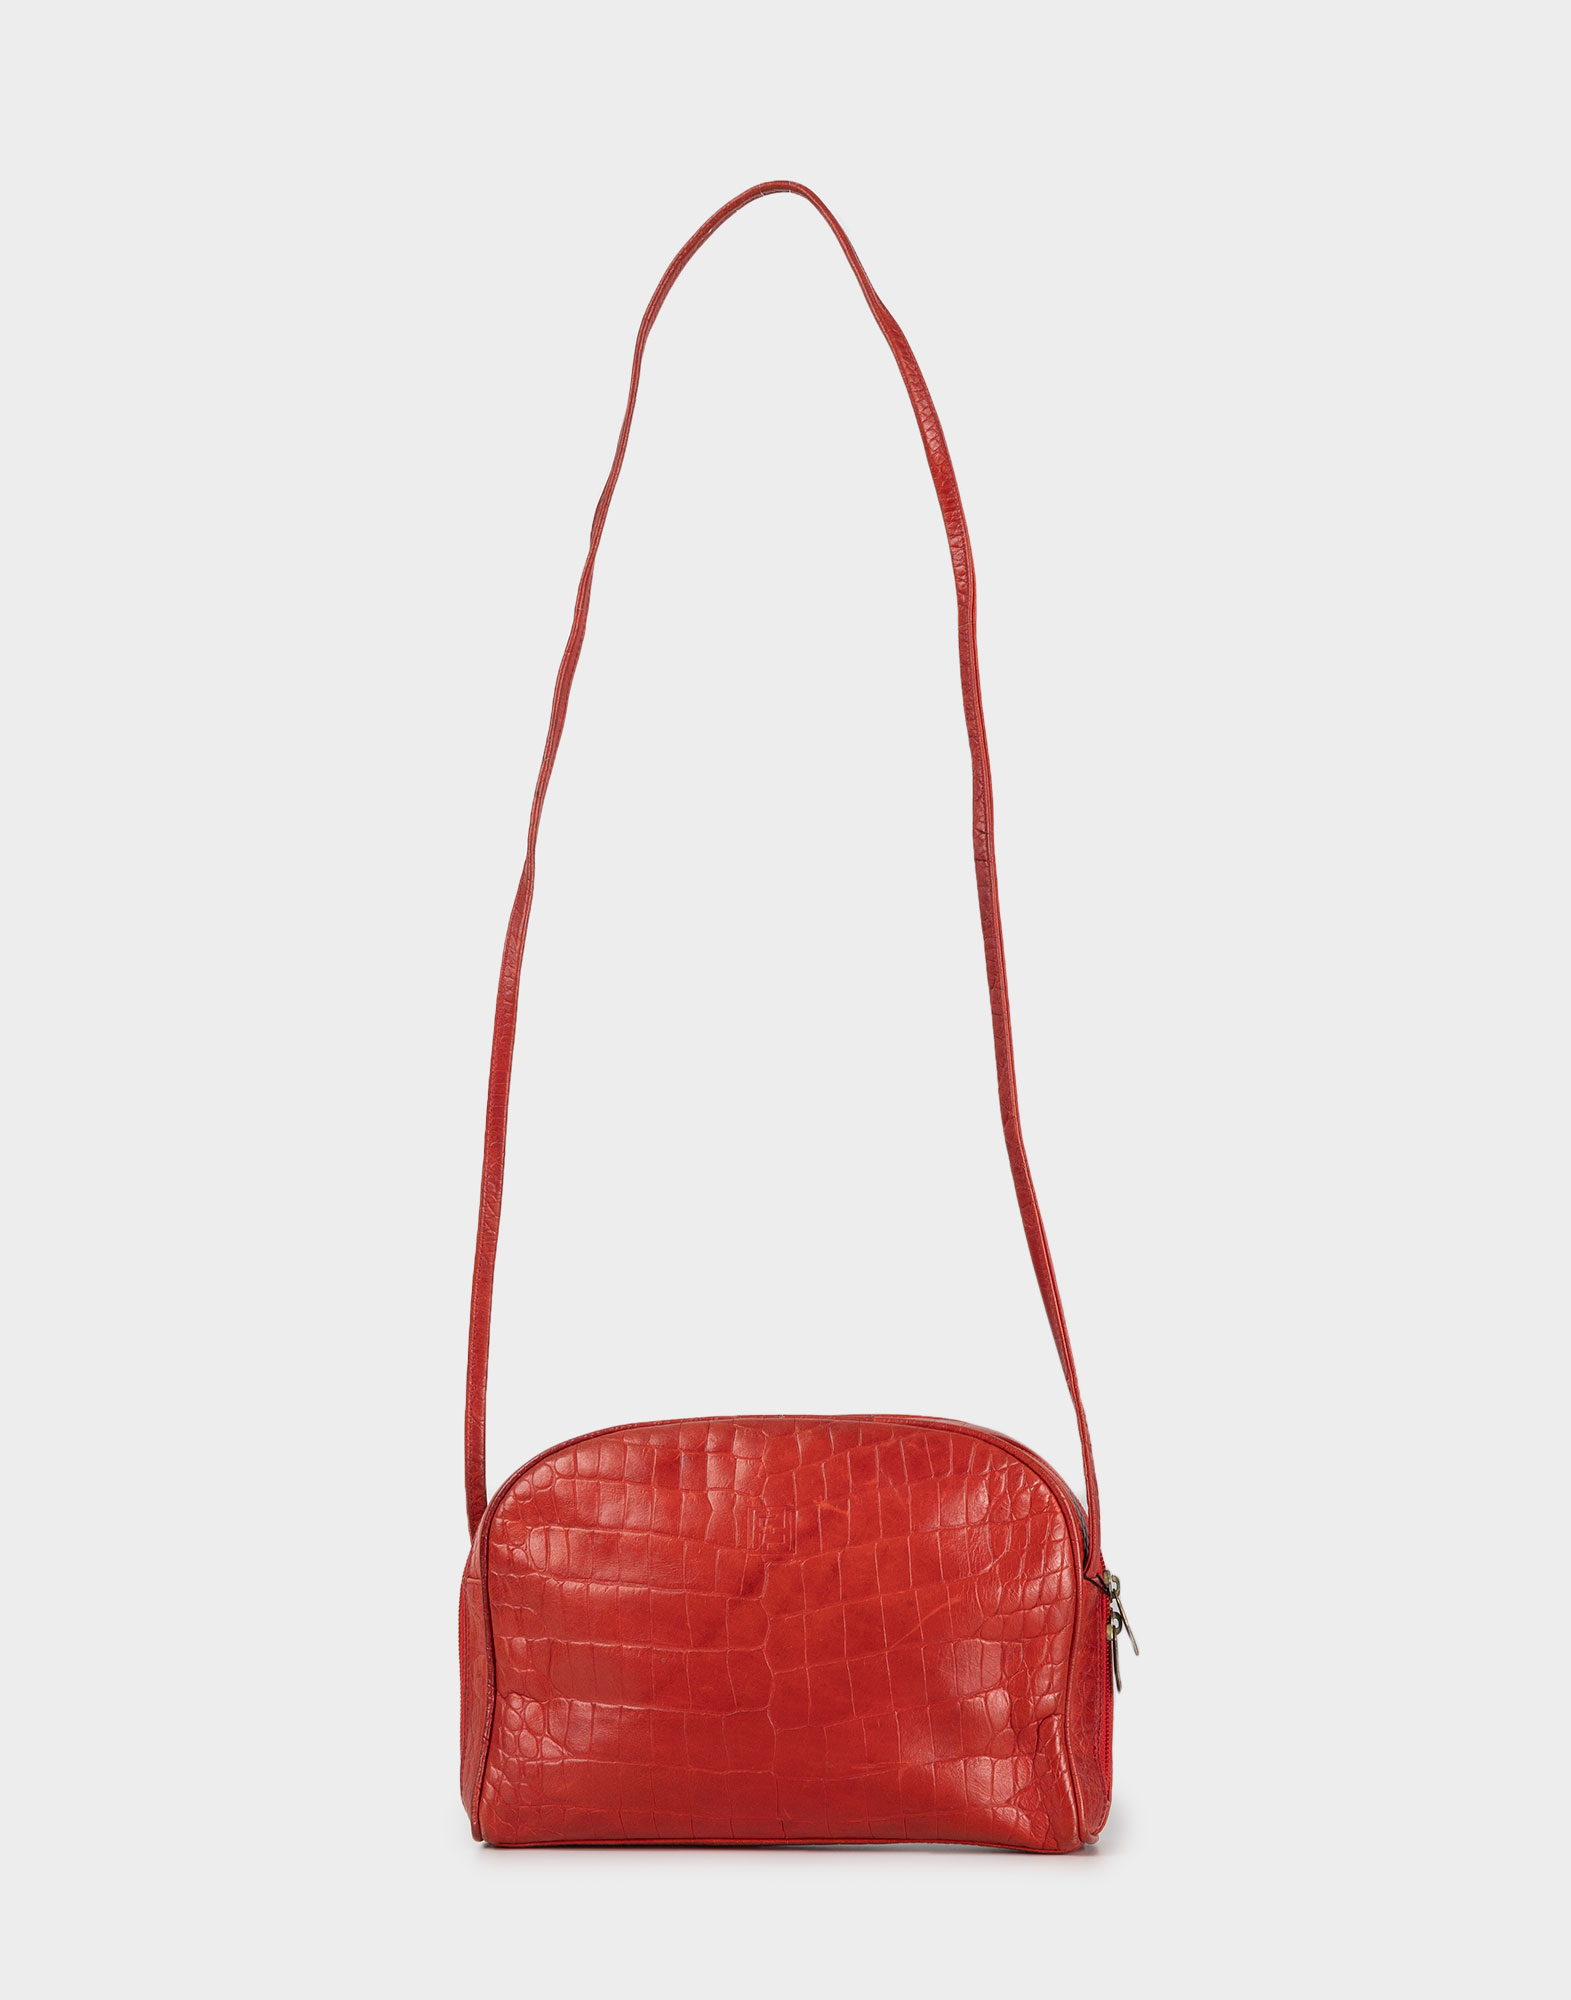 borsa rossa da donna in pelle con tracolla lunga, chiusura superiore con cerniera